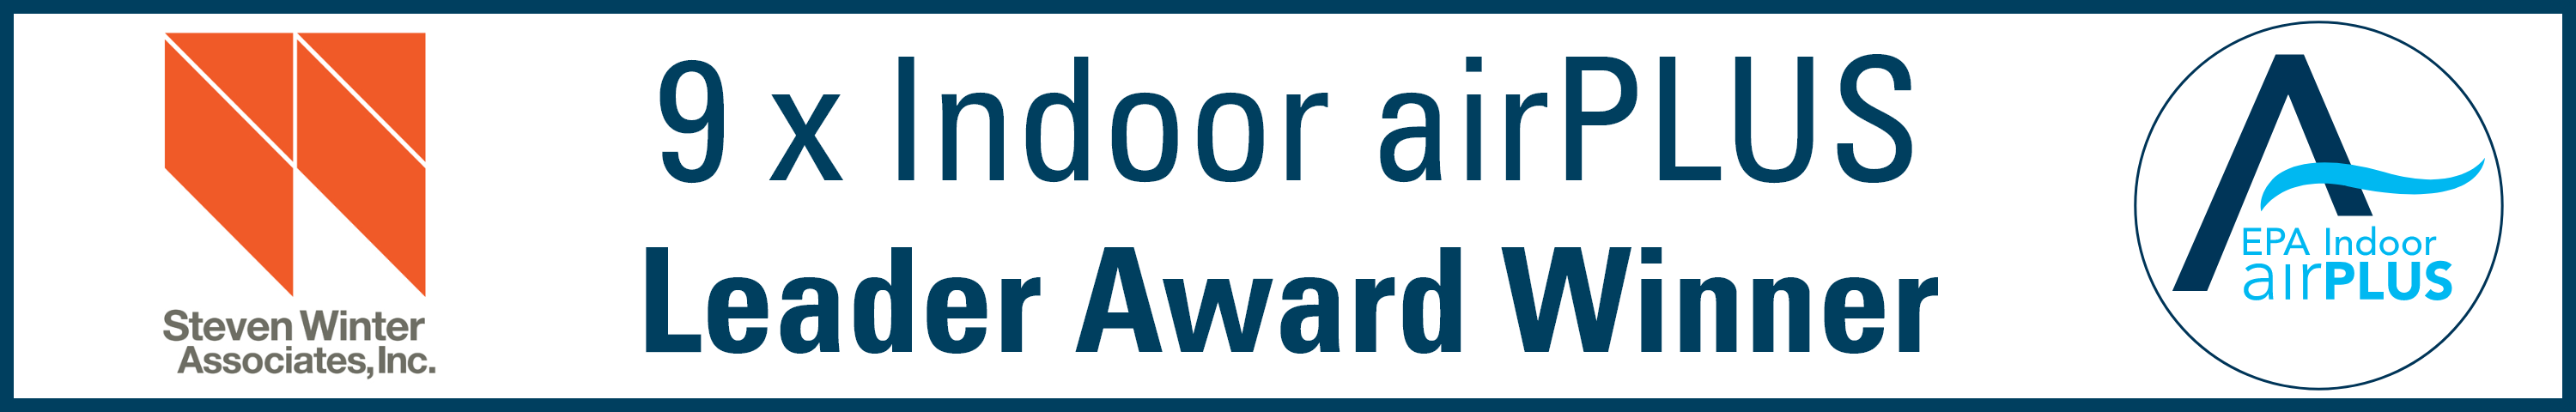 Indoor airPLUS Leader Award Winner Banner